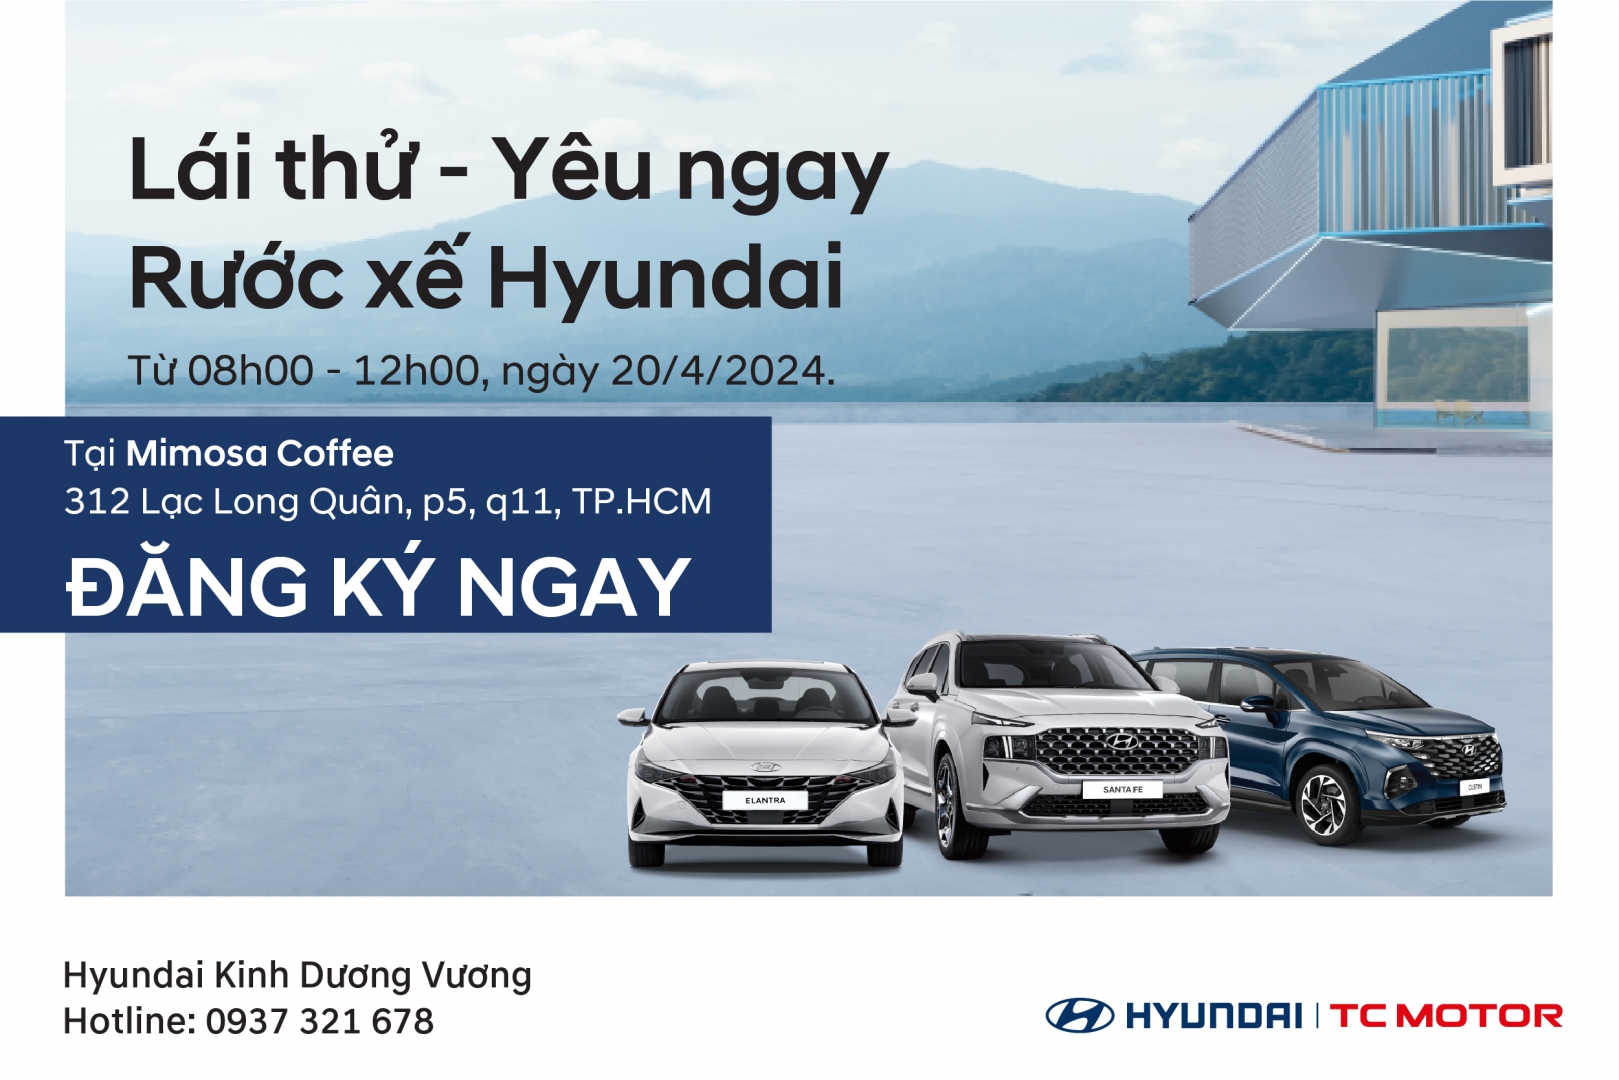 Lái thử - Yêu ngay – Rước xế Hyundai